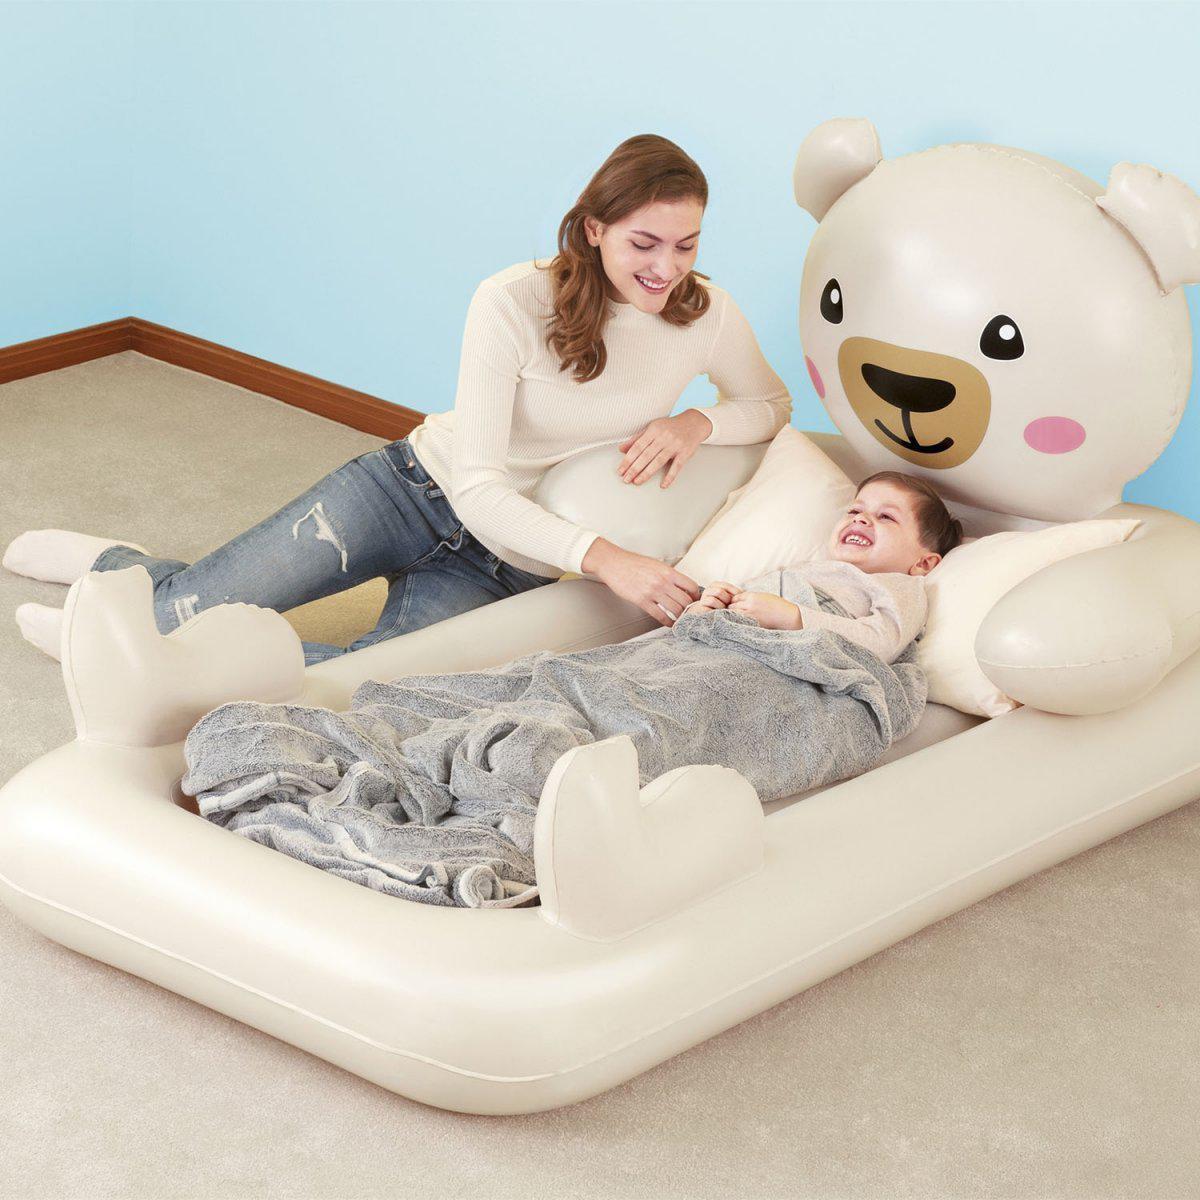 Надувная кровать Bestway Dreamchaser Airbed - Teddy Bear